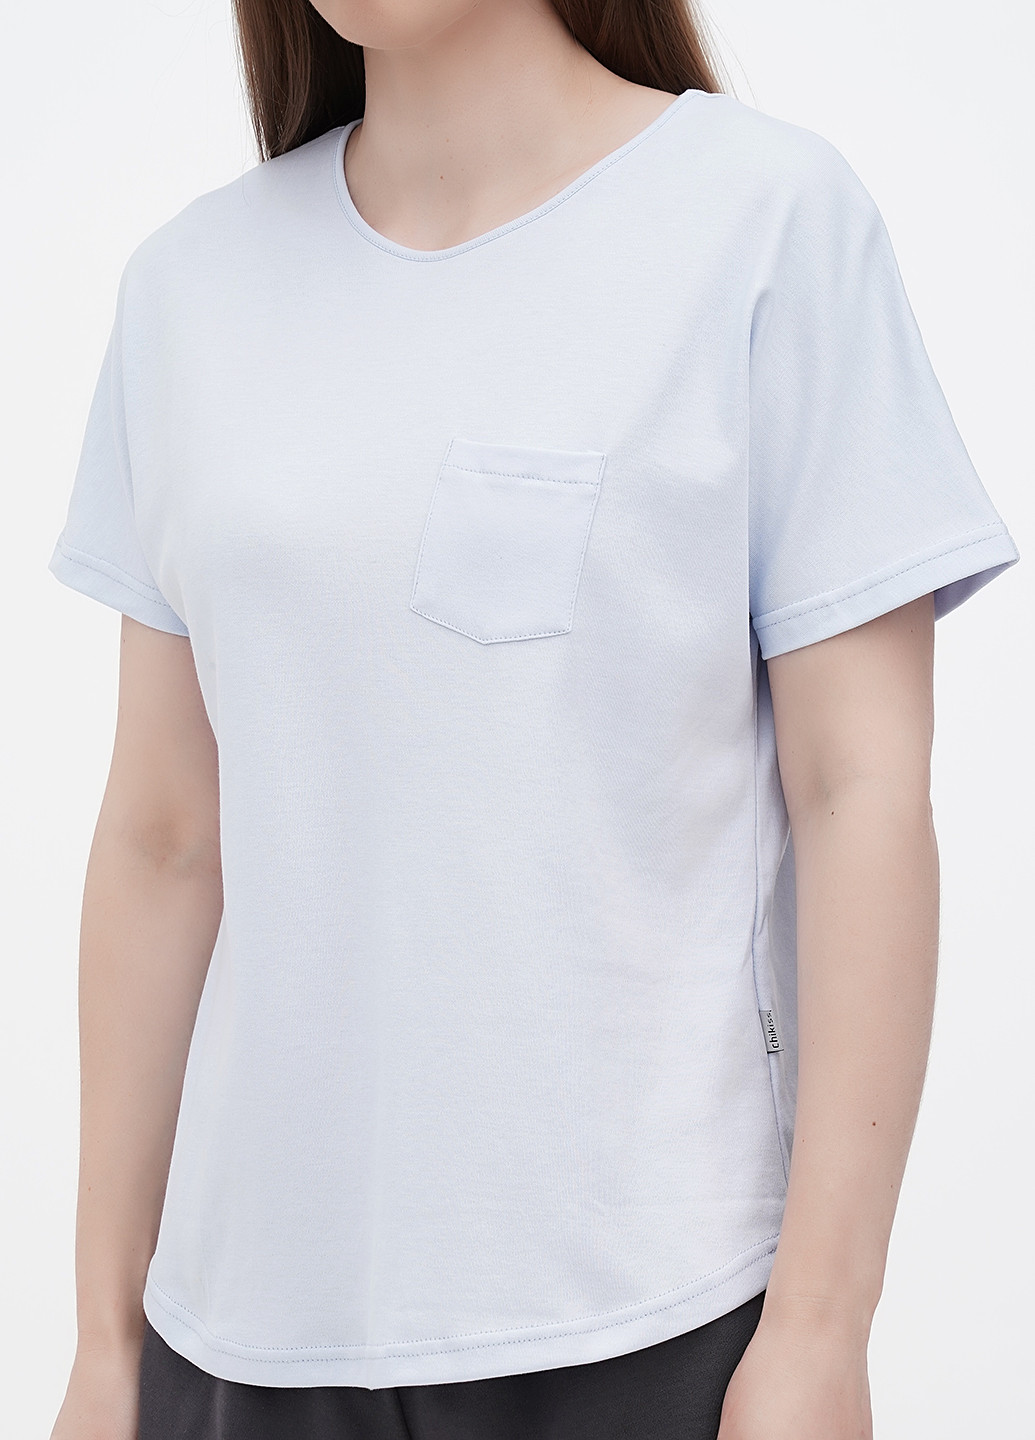 Світло-блакитна всесезон піжама (футболка, шорти) футболка + шорти Chikiss